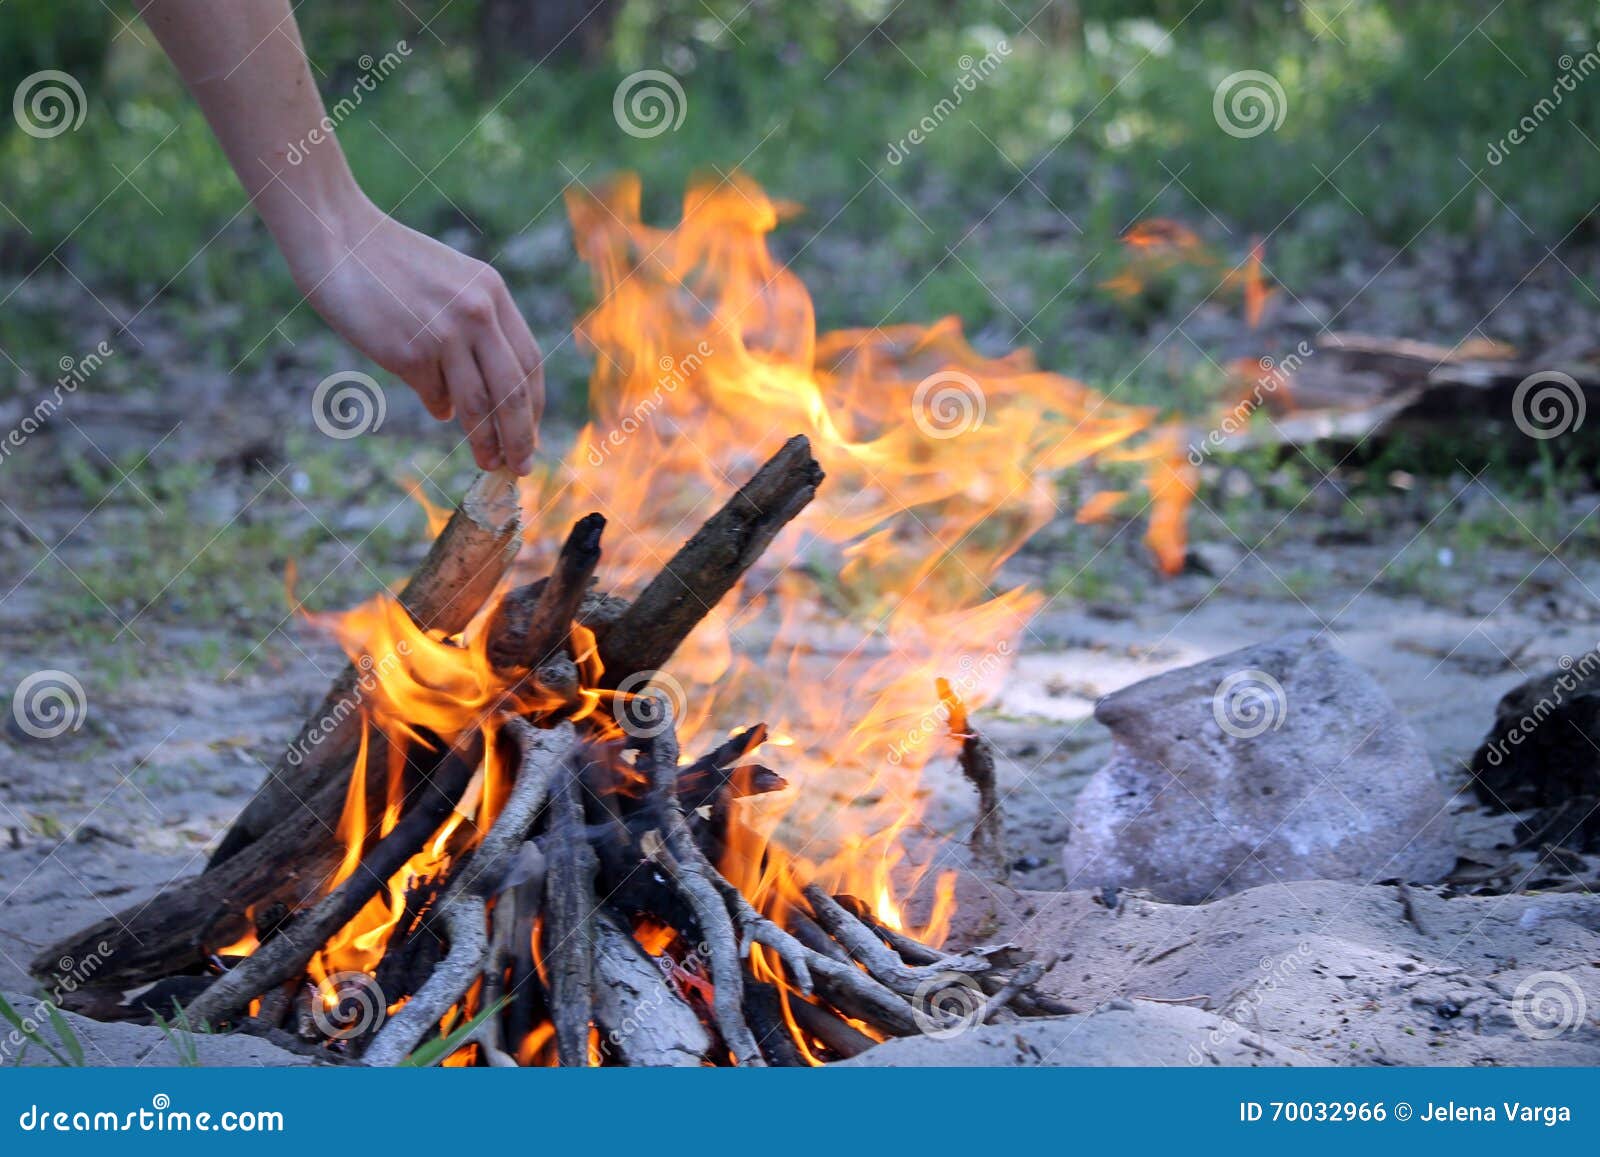 Burning branches stock photo. Image of blaze, orange - 70032966